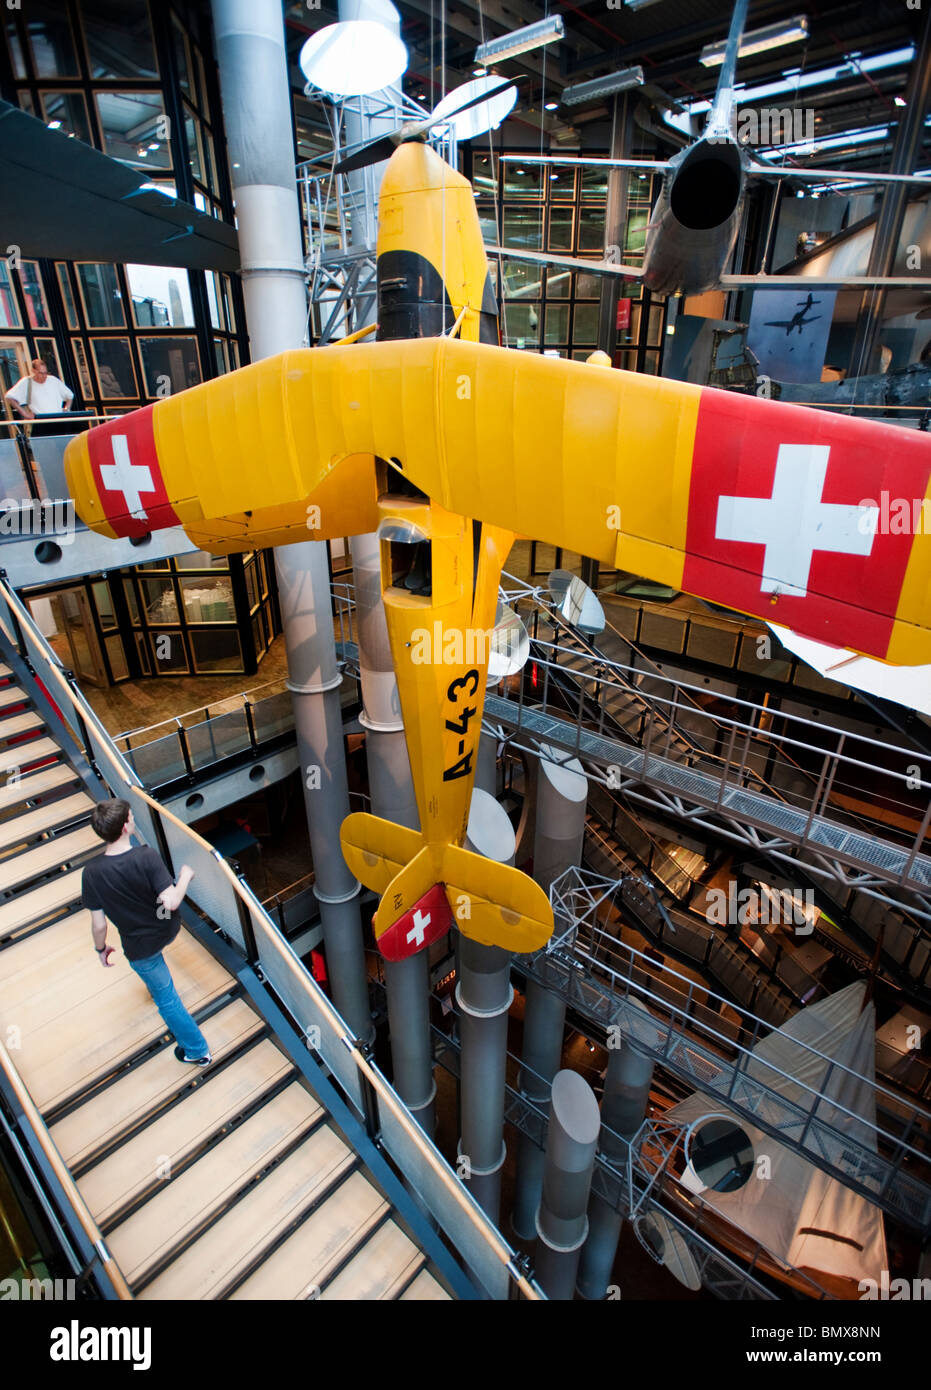 Históricos aviones en exhibición en el Deutsches Technikmuseum o el Museo Alemán de Tecnología de Berlín en Alemania Foto de stock